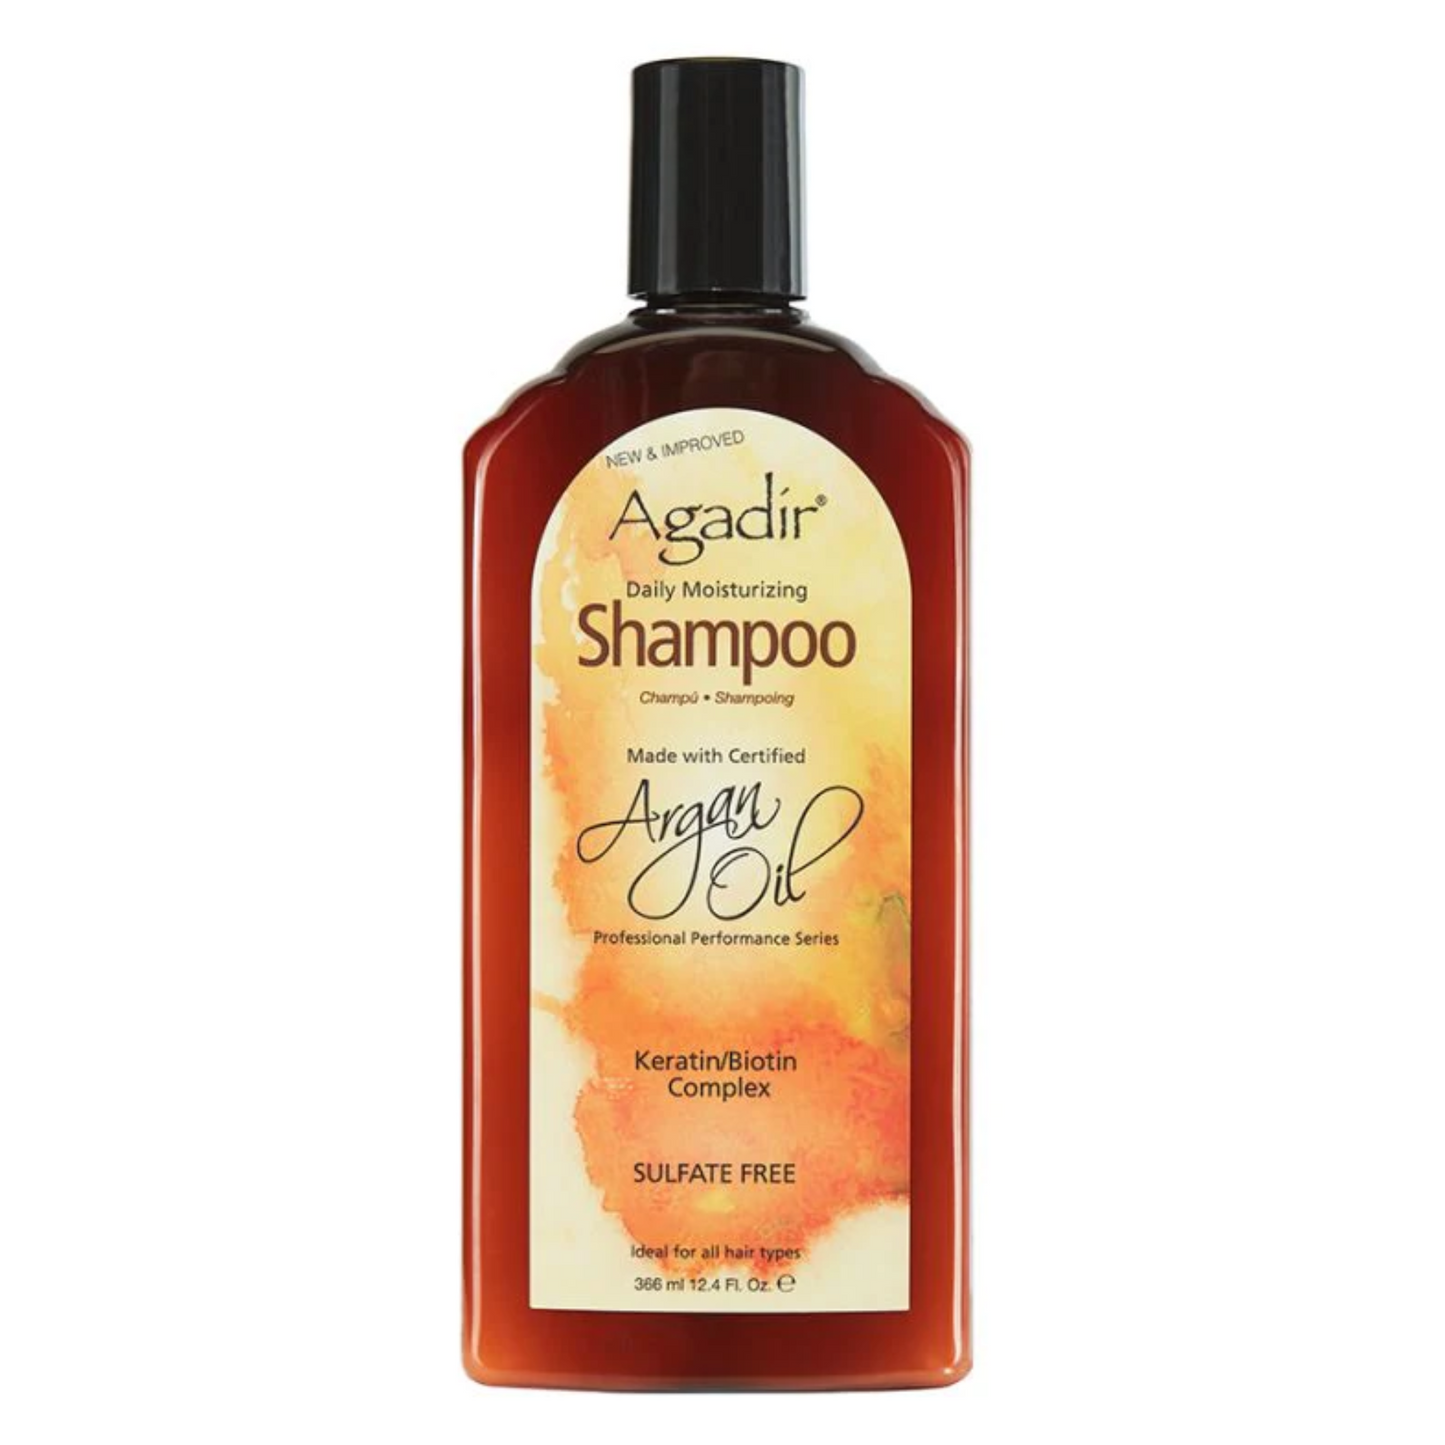 Agadir Daily Moisturizing Shampoo 366 ML